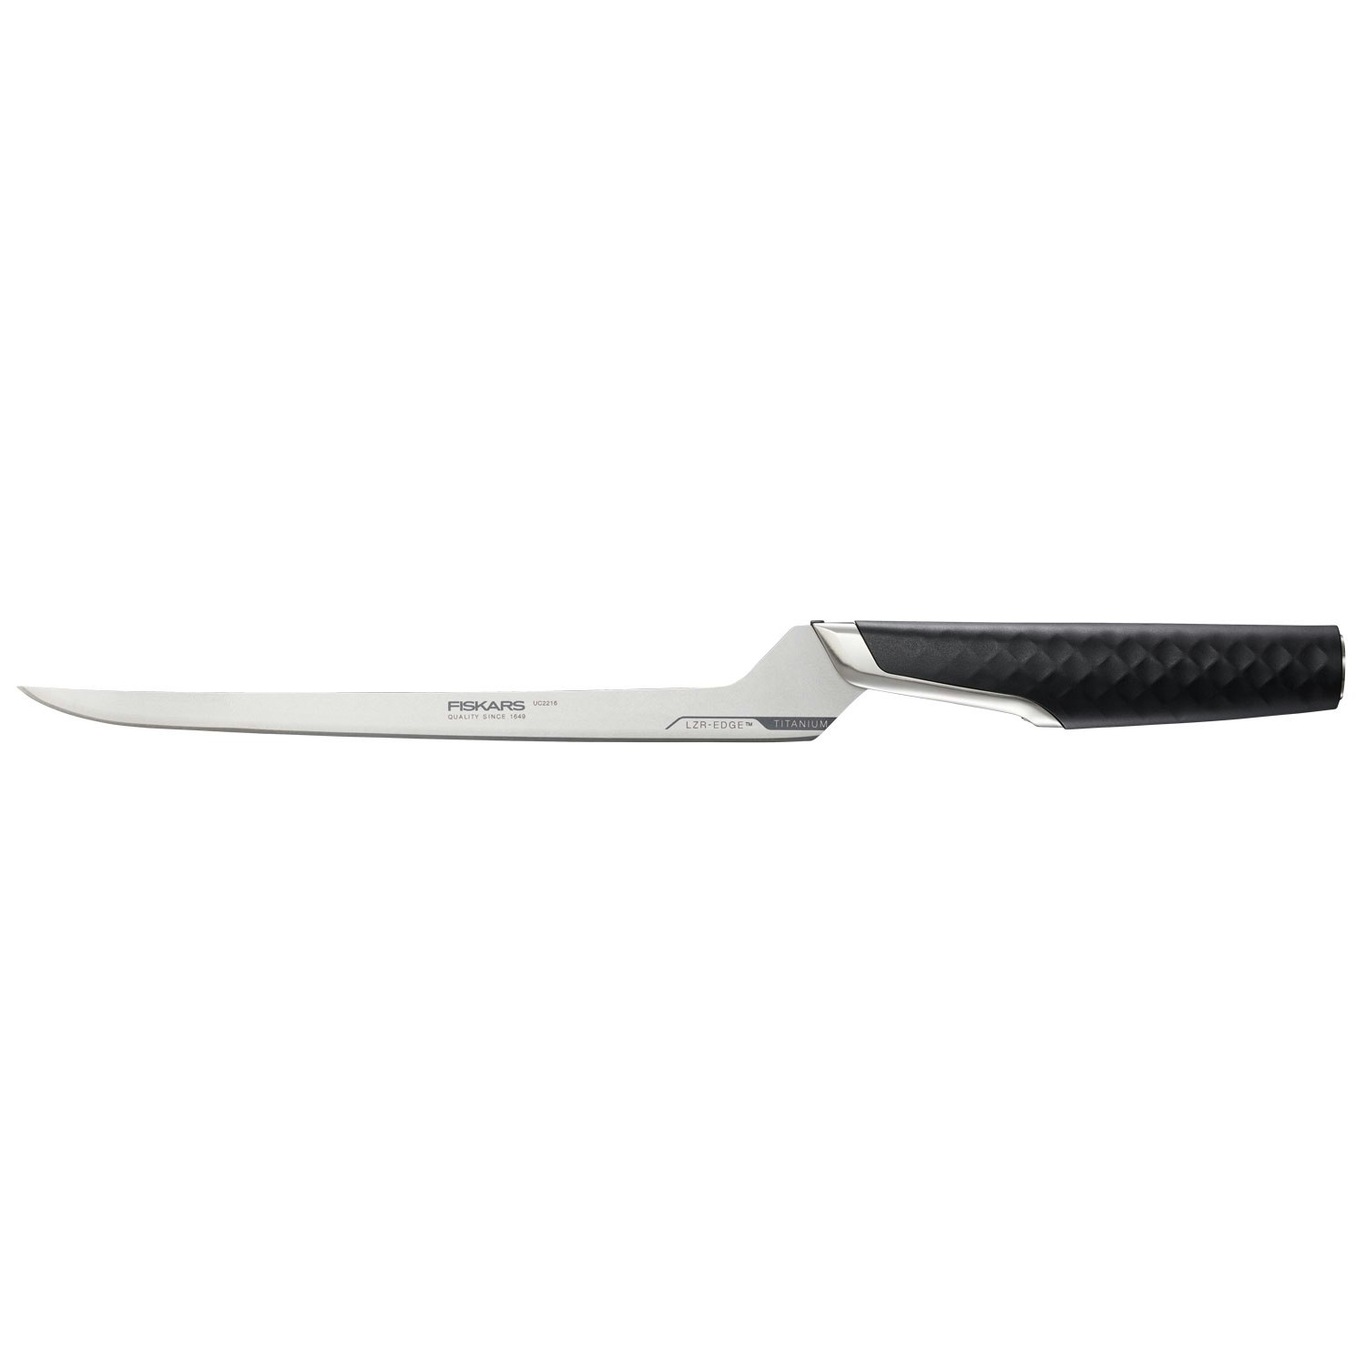 Titanium Fileteringskniv, 21 cm